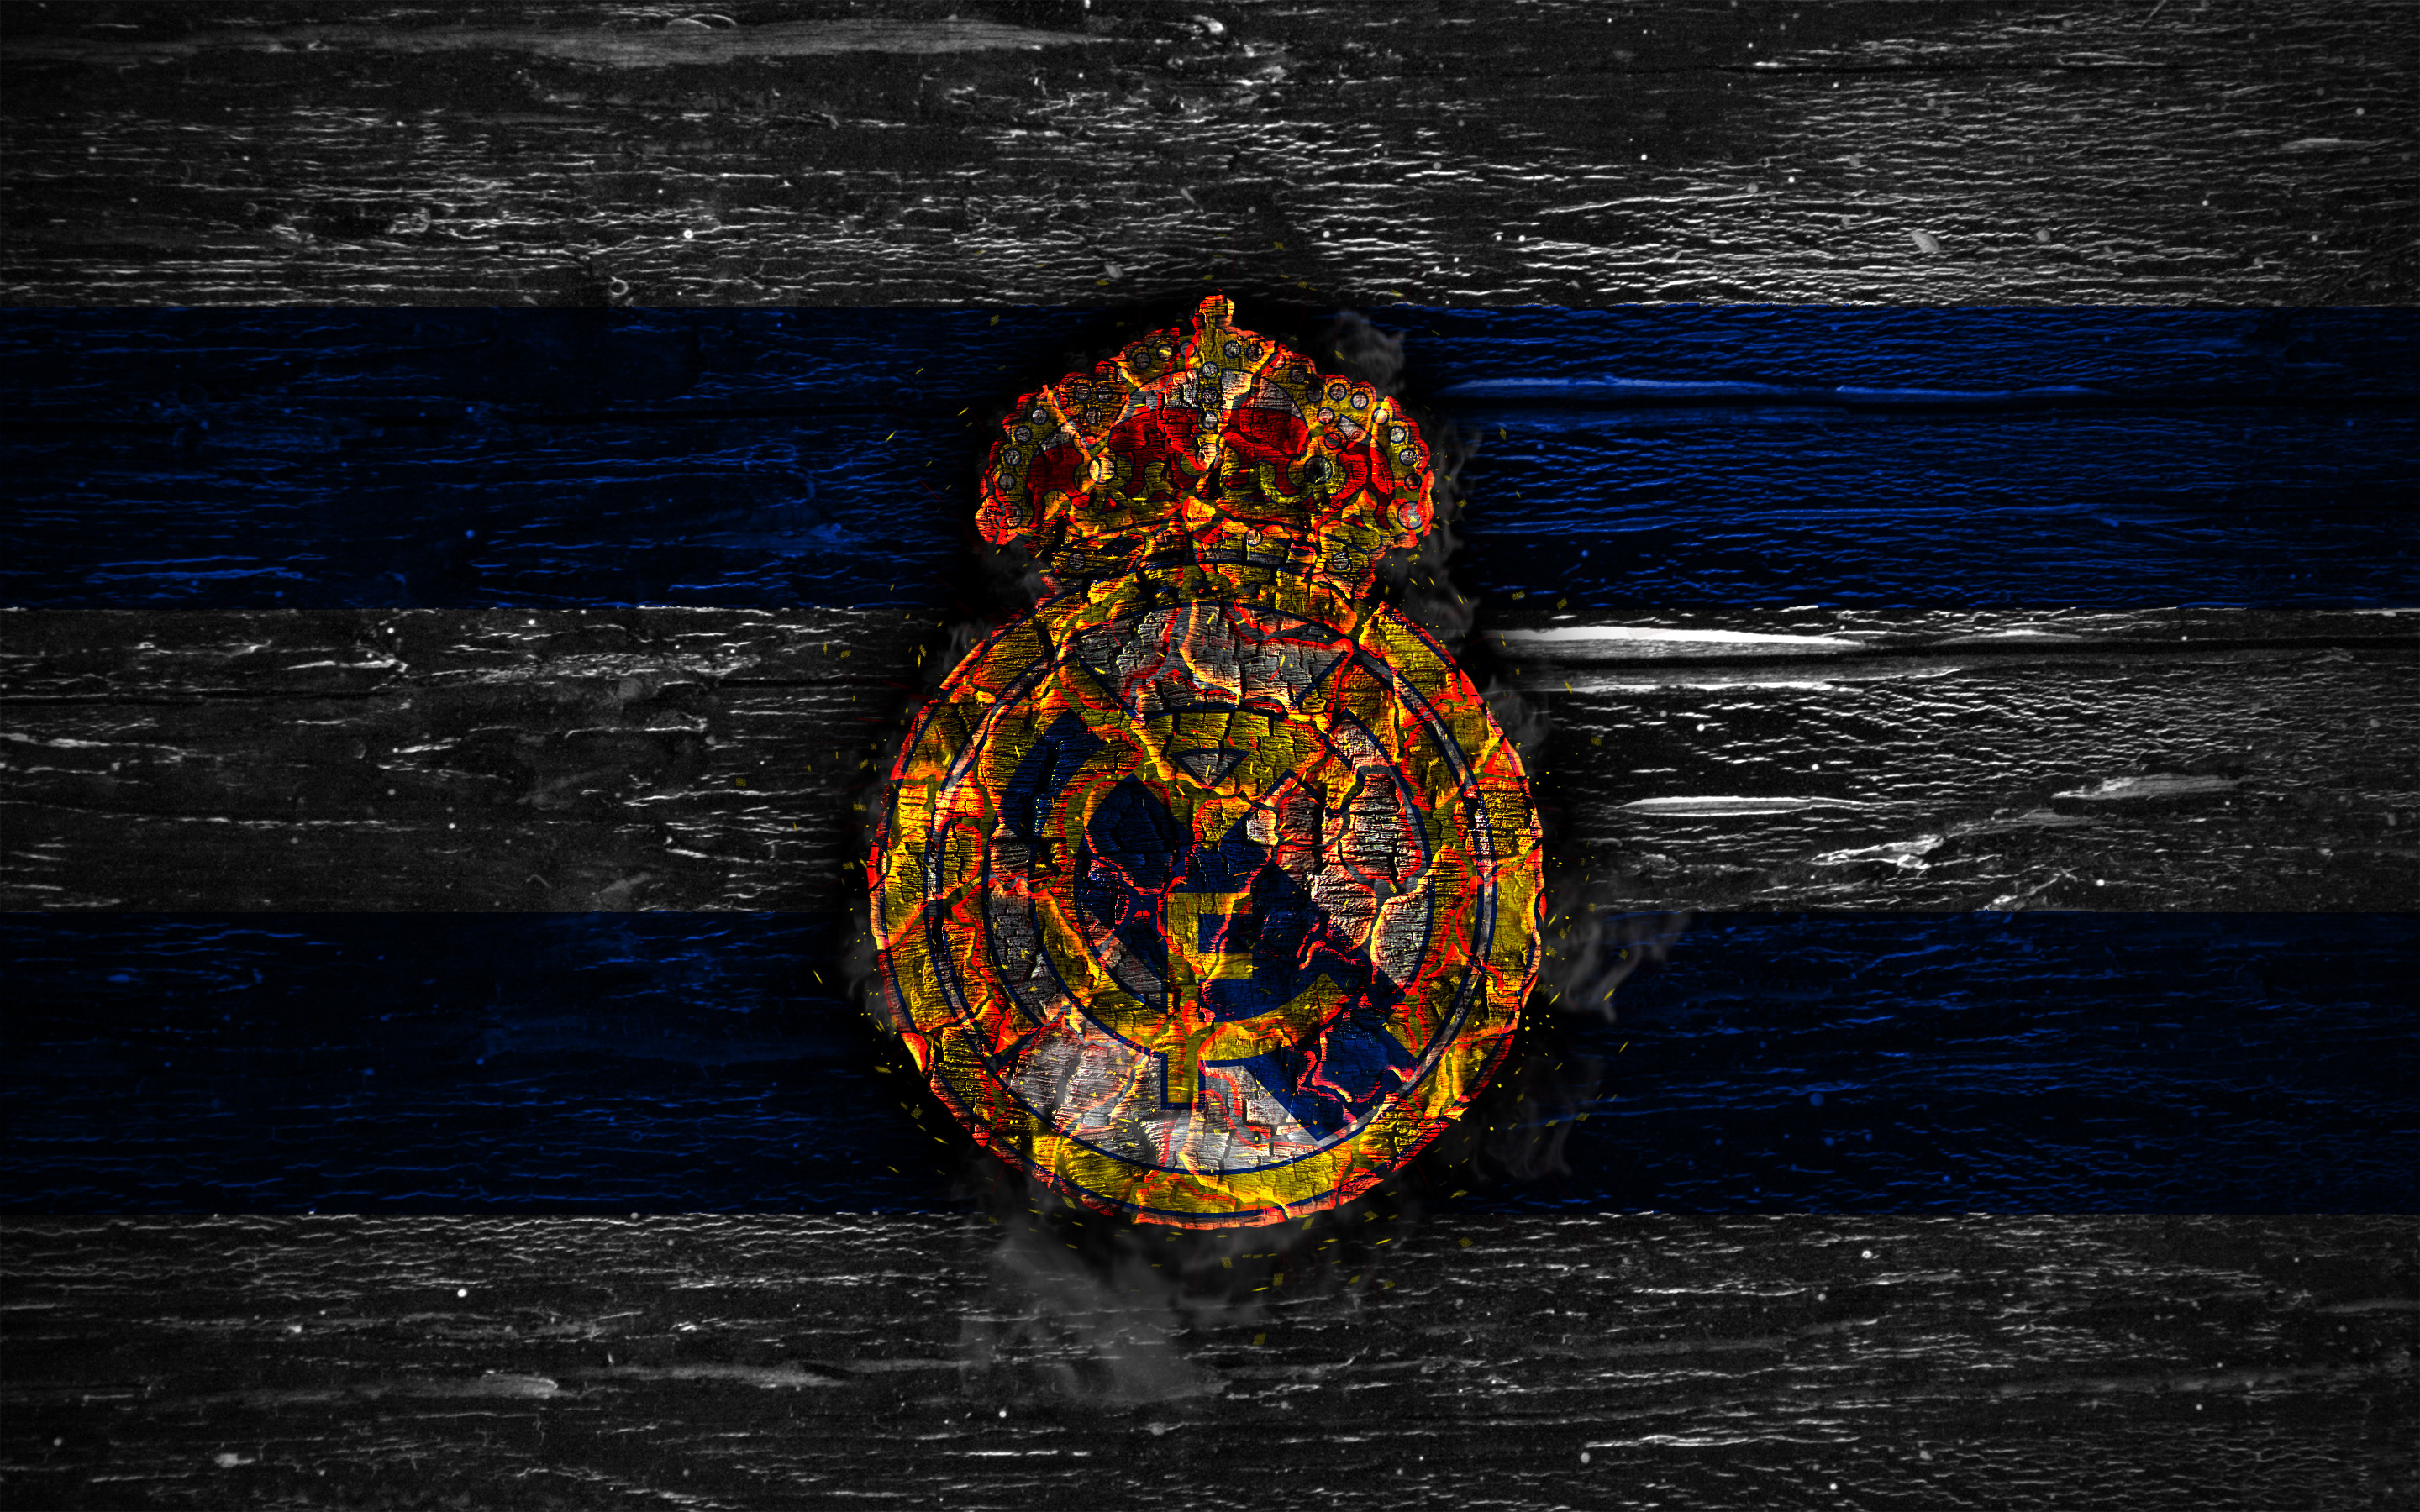 Descarga gratuita de fondo de pantalla para móvil de Fútbol, Logo, Deporte, Real Madrid C F.